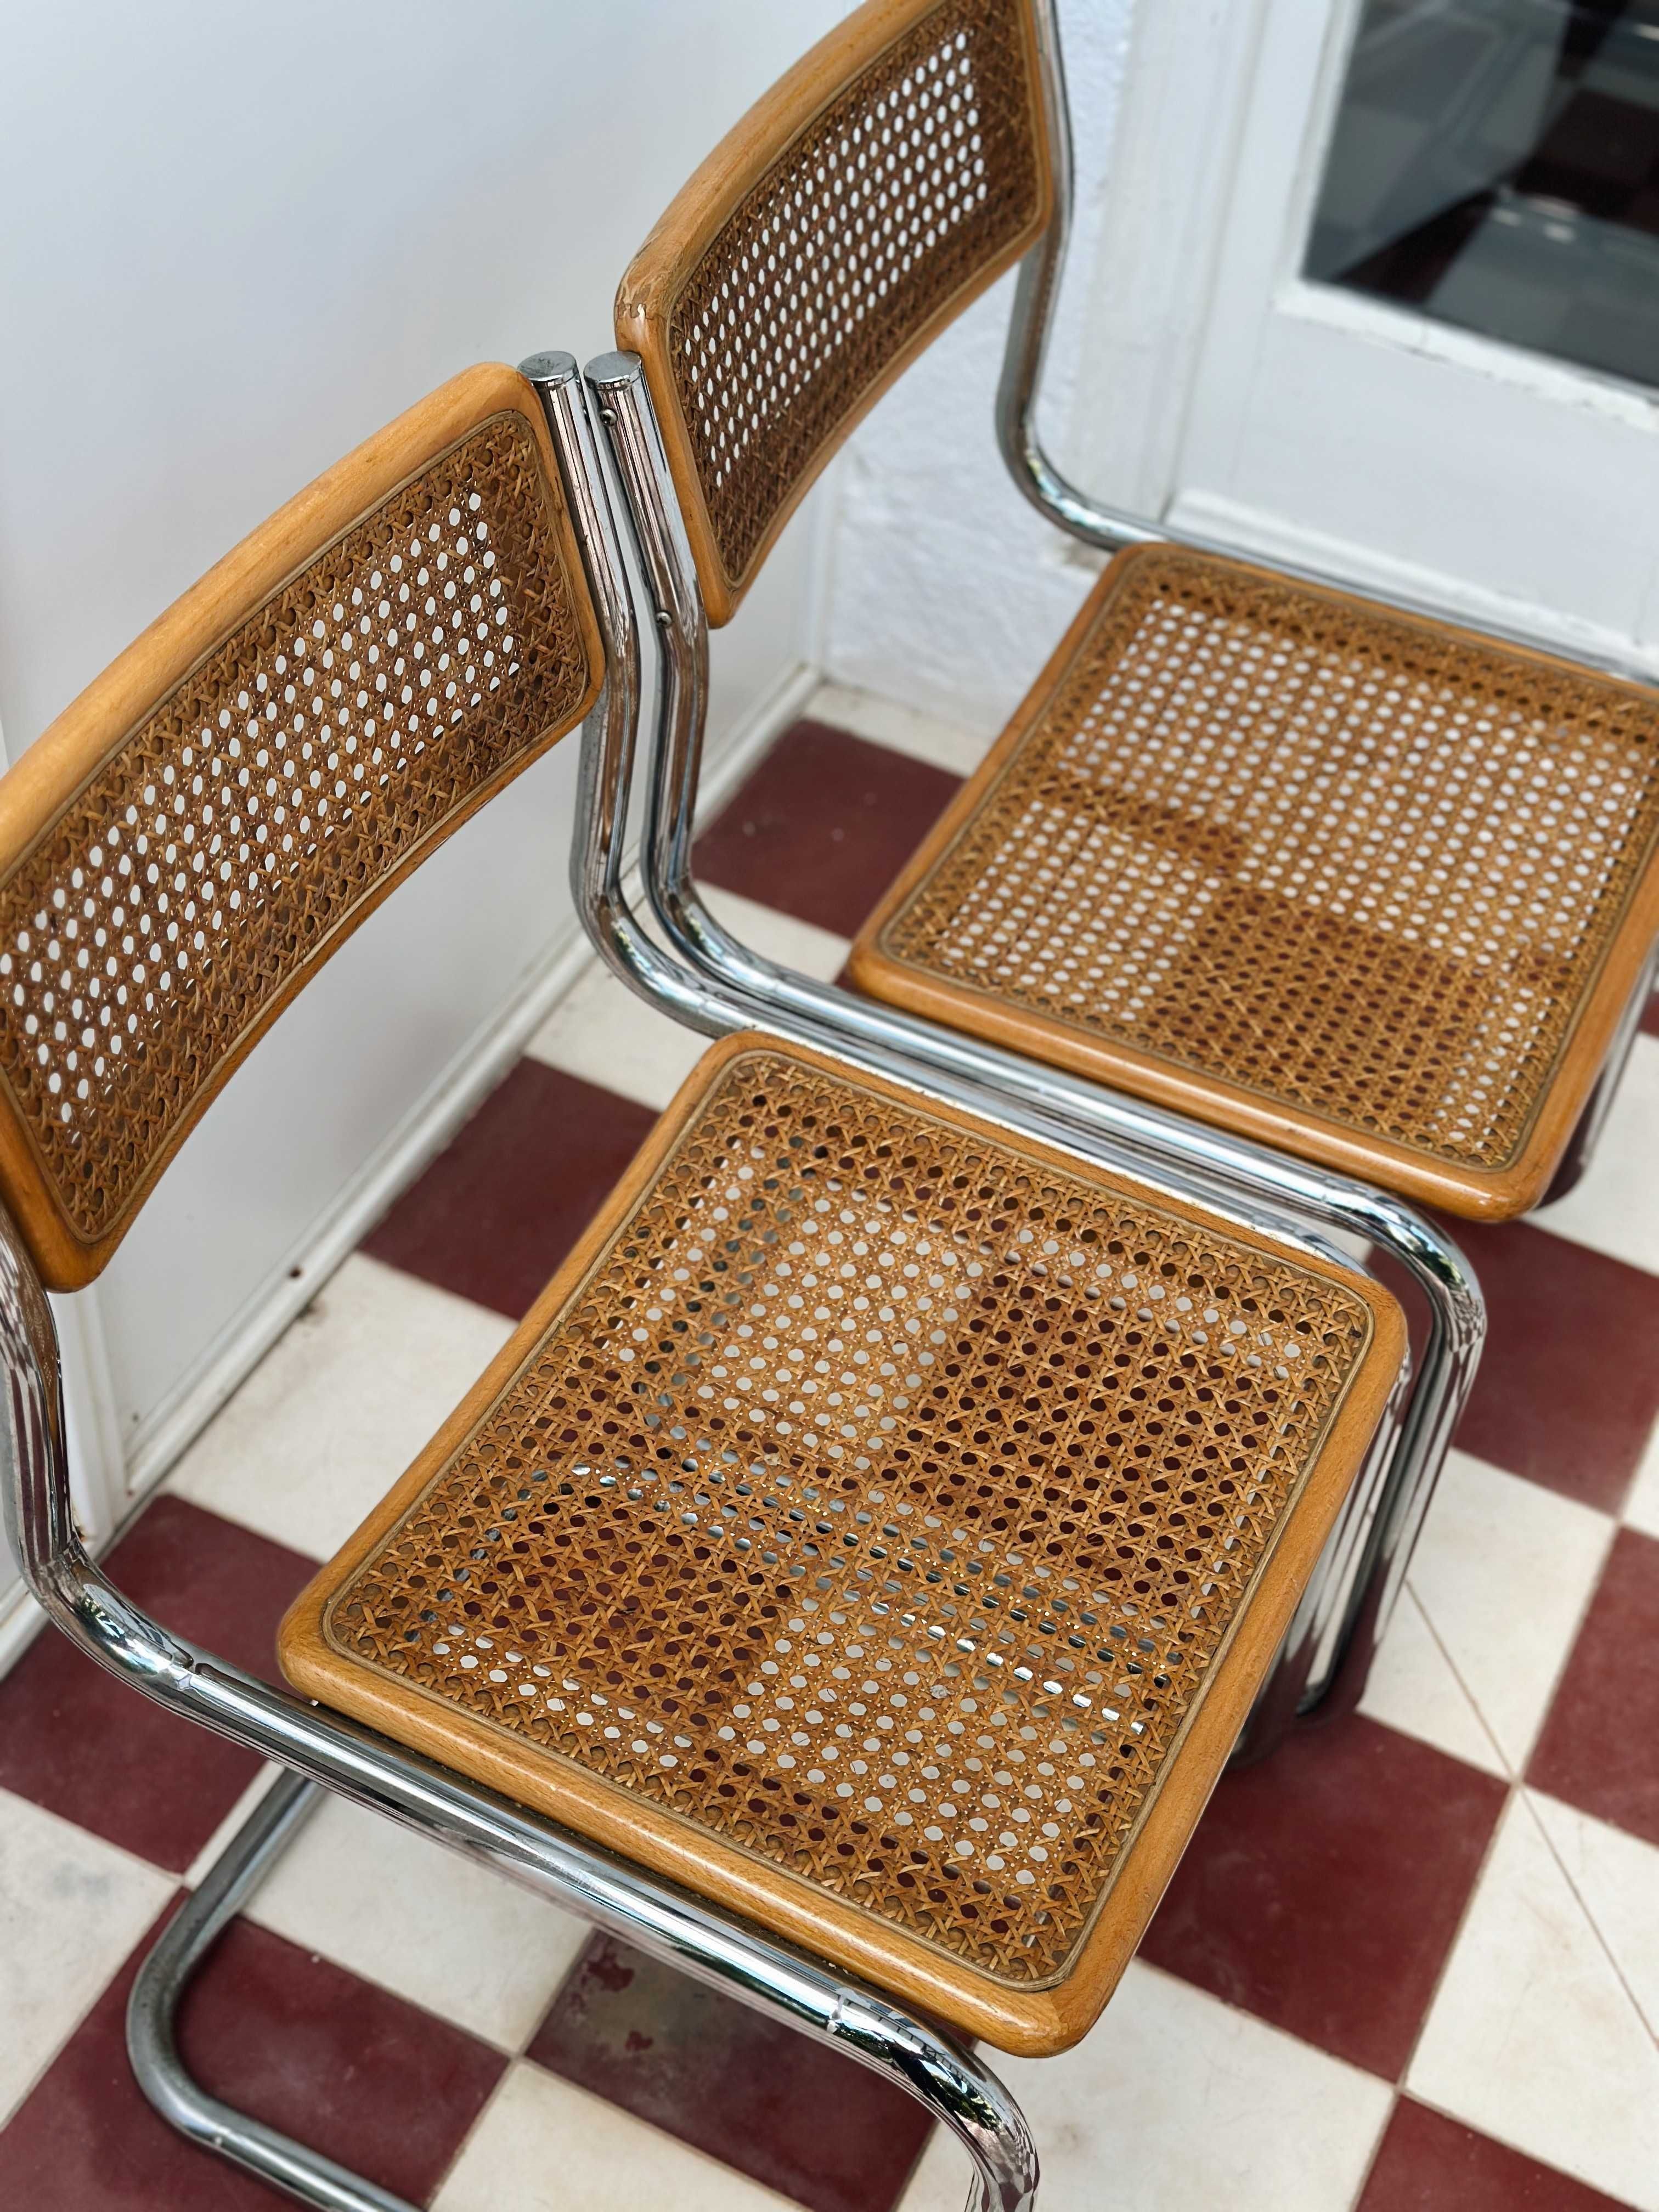 Cadeiras no estilo da cadeira Cesca de Marcel Breuer